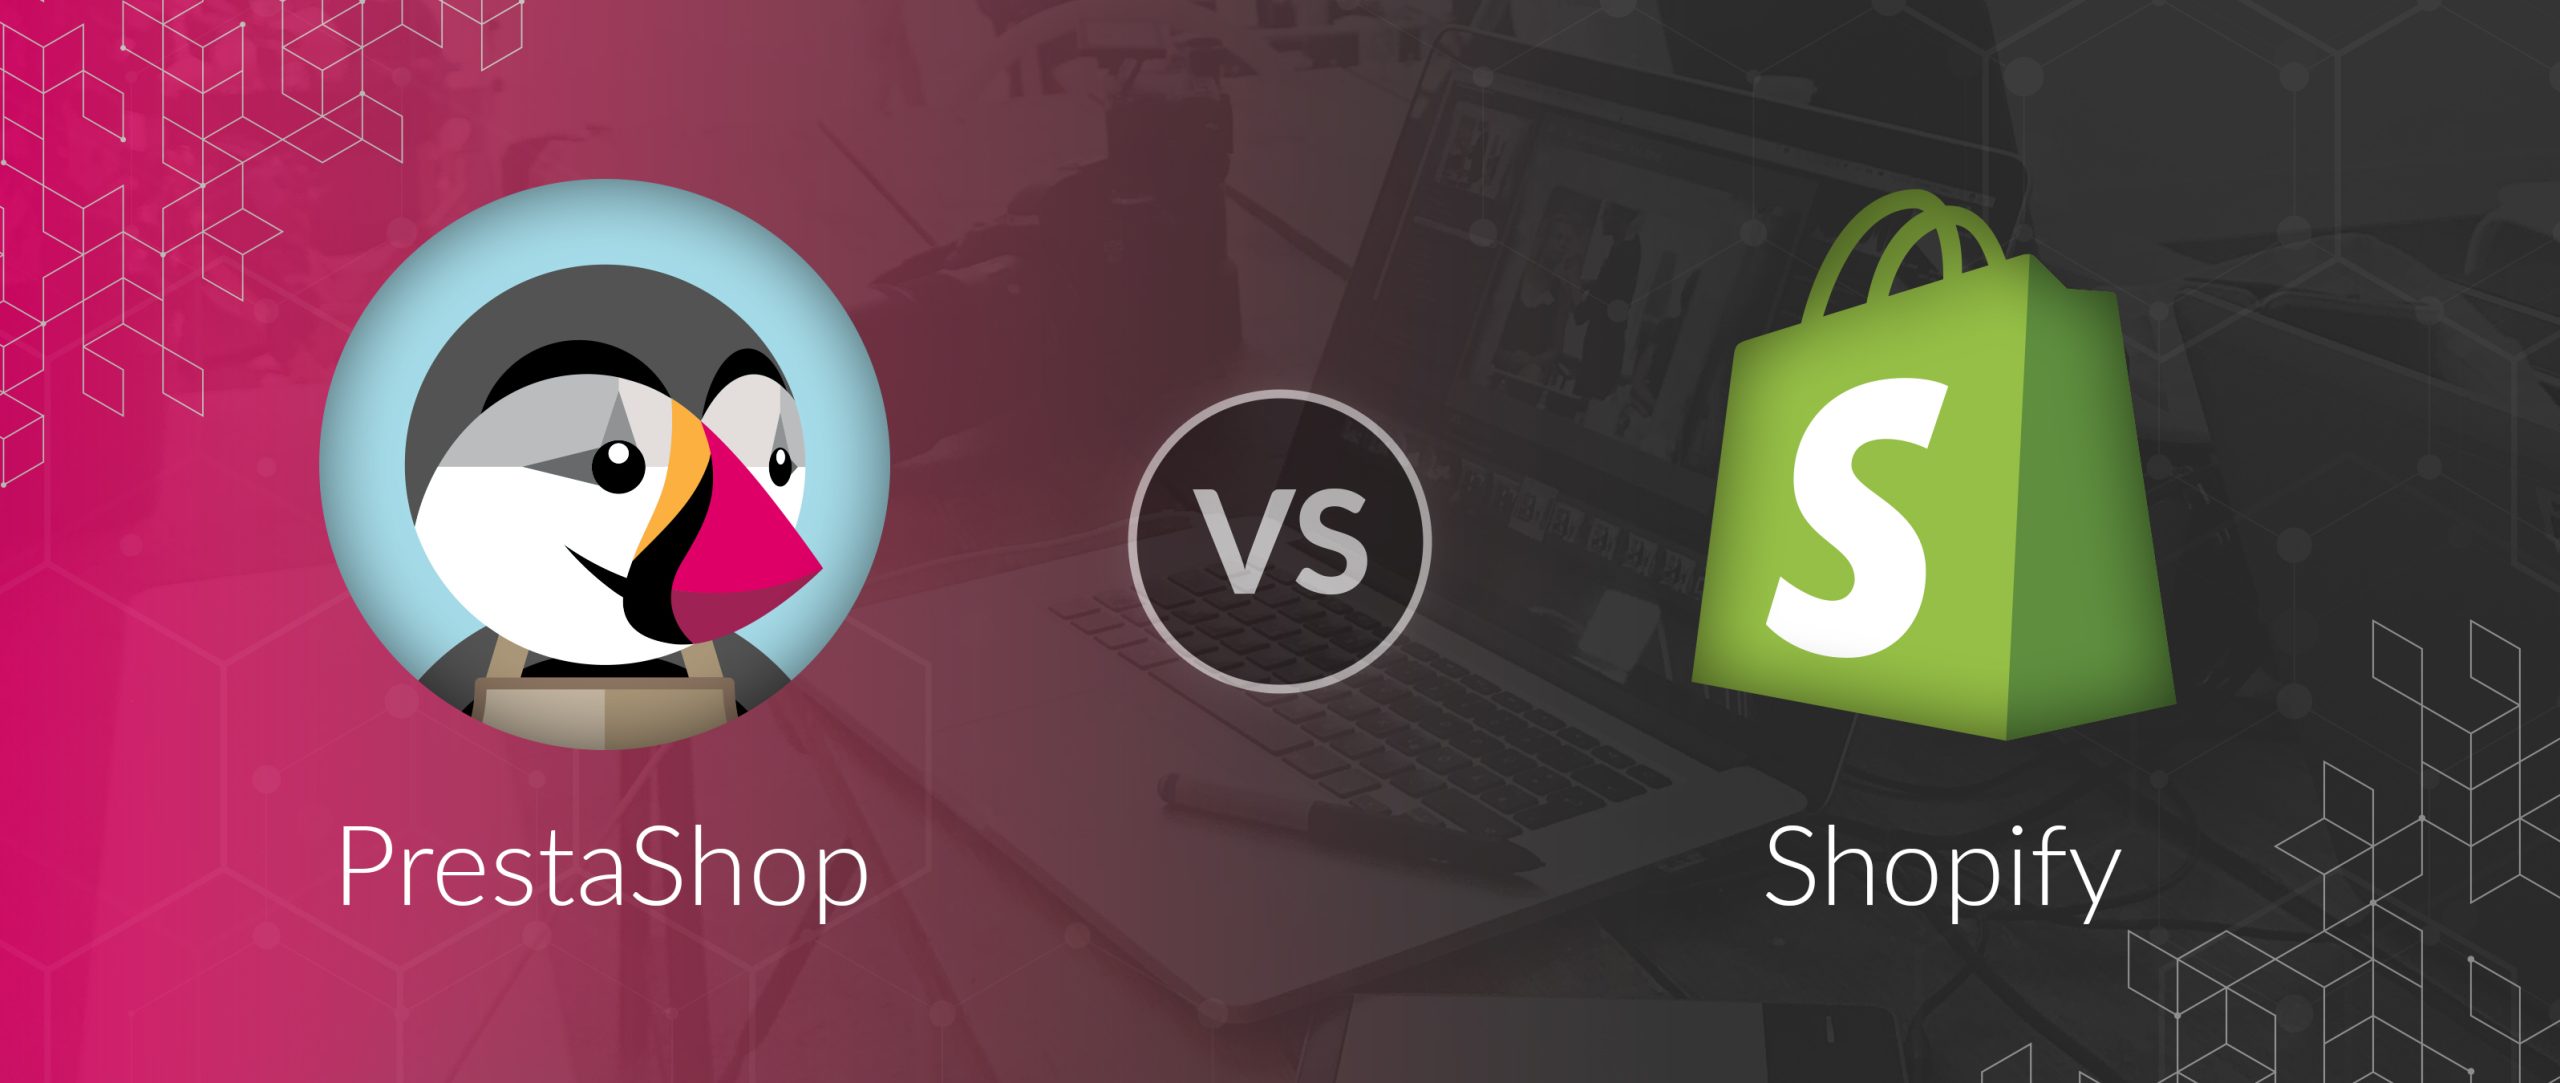 PrestaShop v/s Shopify: welk eCommerce platform past bij uw bedrijf?